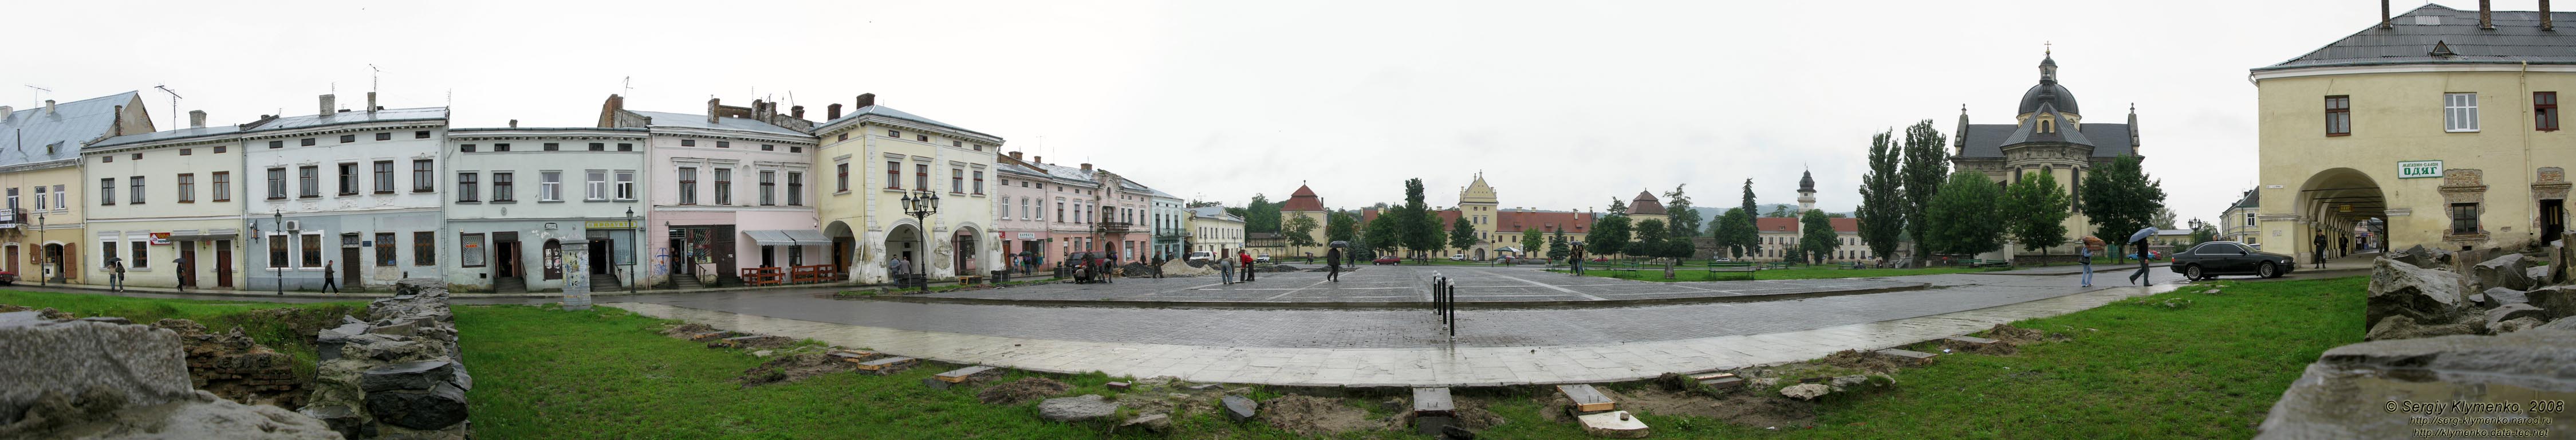 Жолква. Фото. Вечевая площадь (бывшая Площадь Рынок). Панорама (~210°).